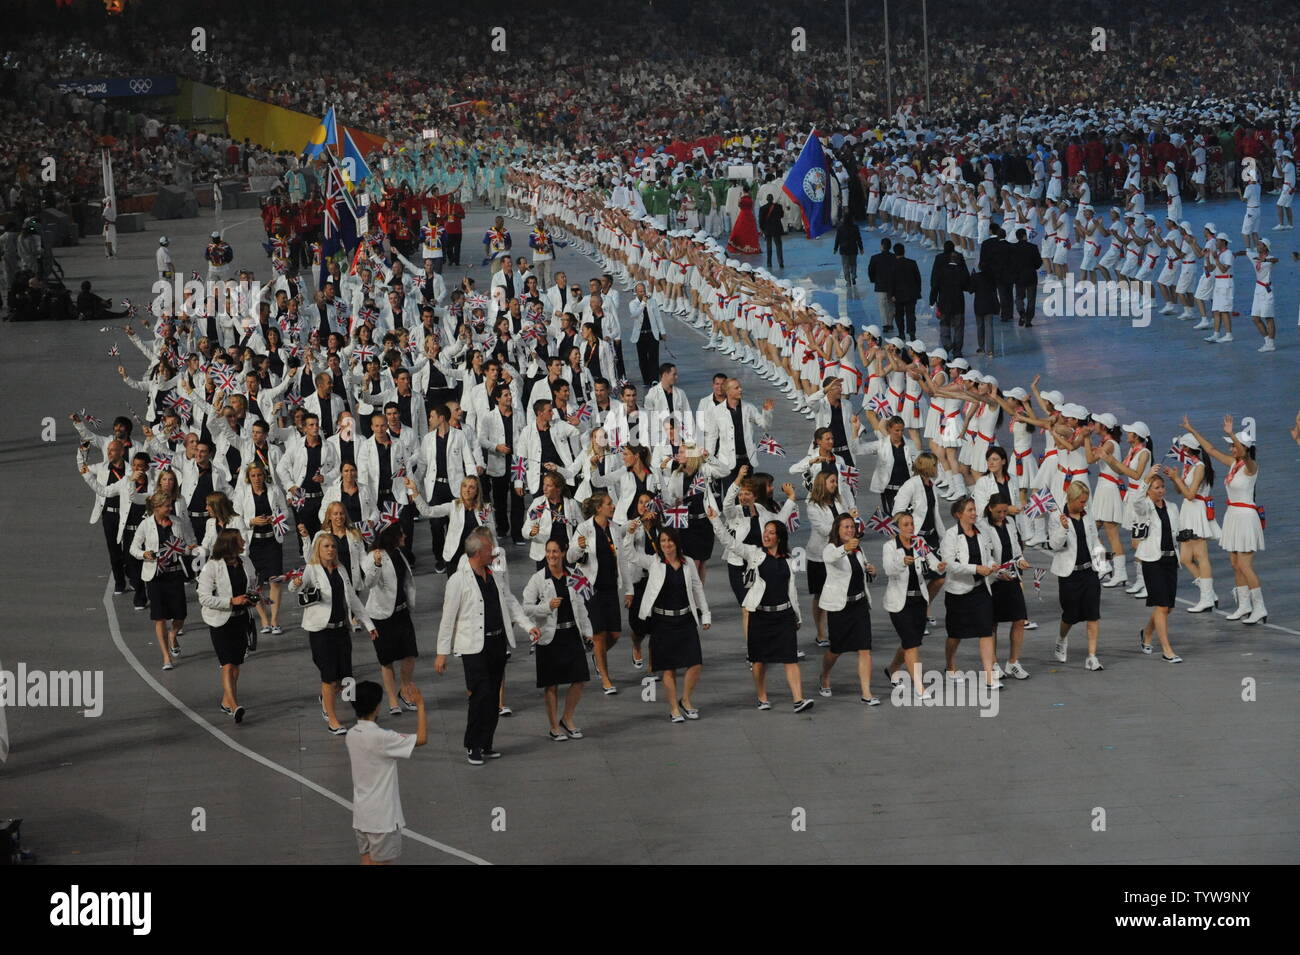 Die britische olympische Mannschaft marschiert in National Stadium, auch genannt der Bird's Nest, während der Eröffnungszeremonie für die Olympischen Sommerspiele 2008 in Peking, China, am 8. August 2008. (UPI Foto/Pat Benic) Stockfoto